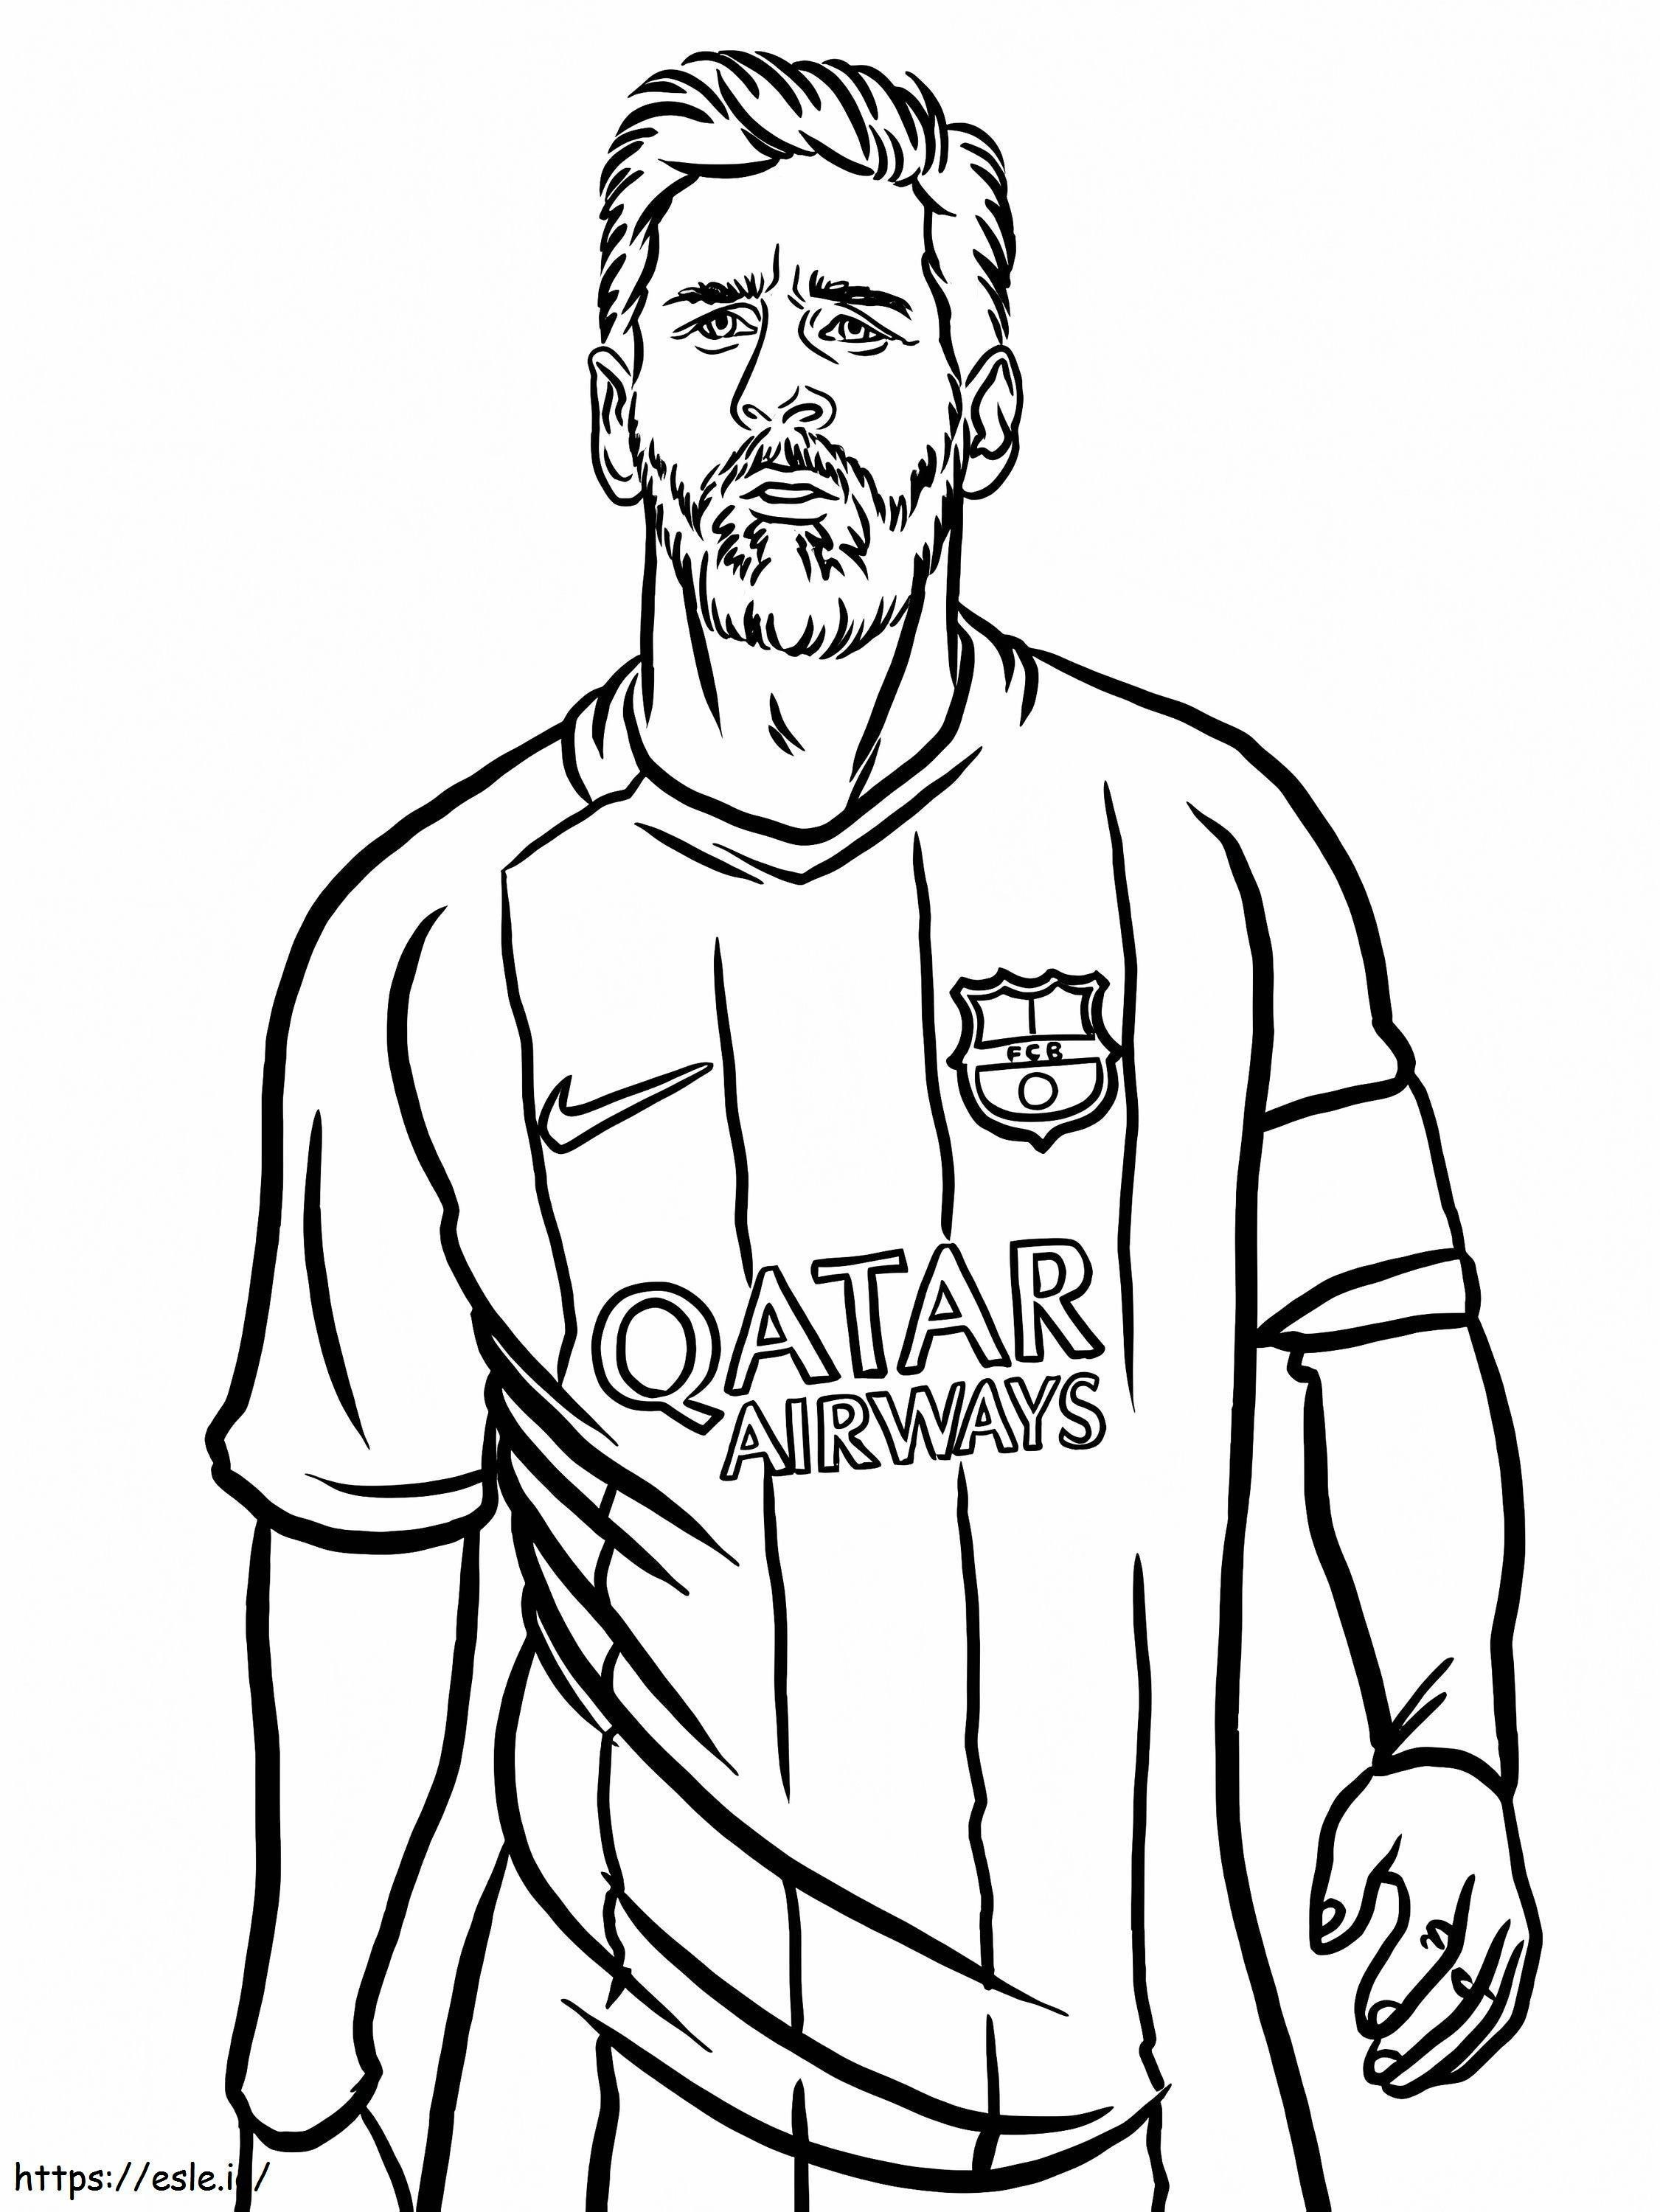 Porträt von Lionel Messi ausmalbilder